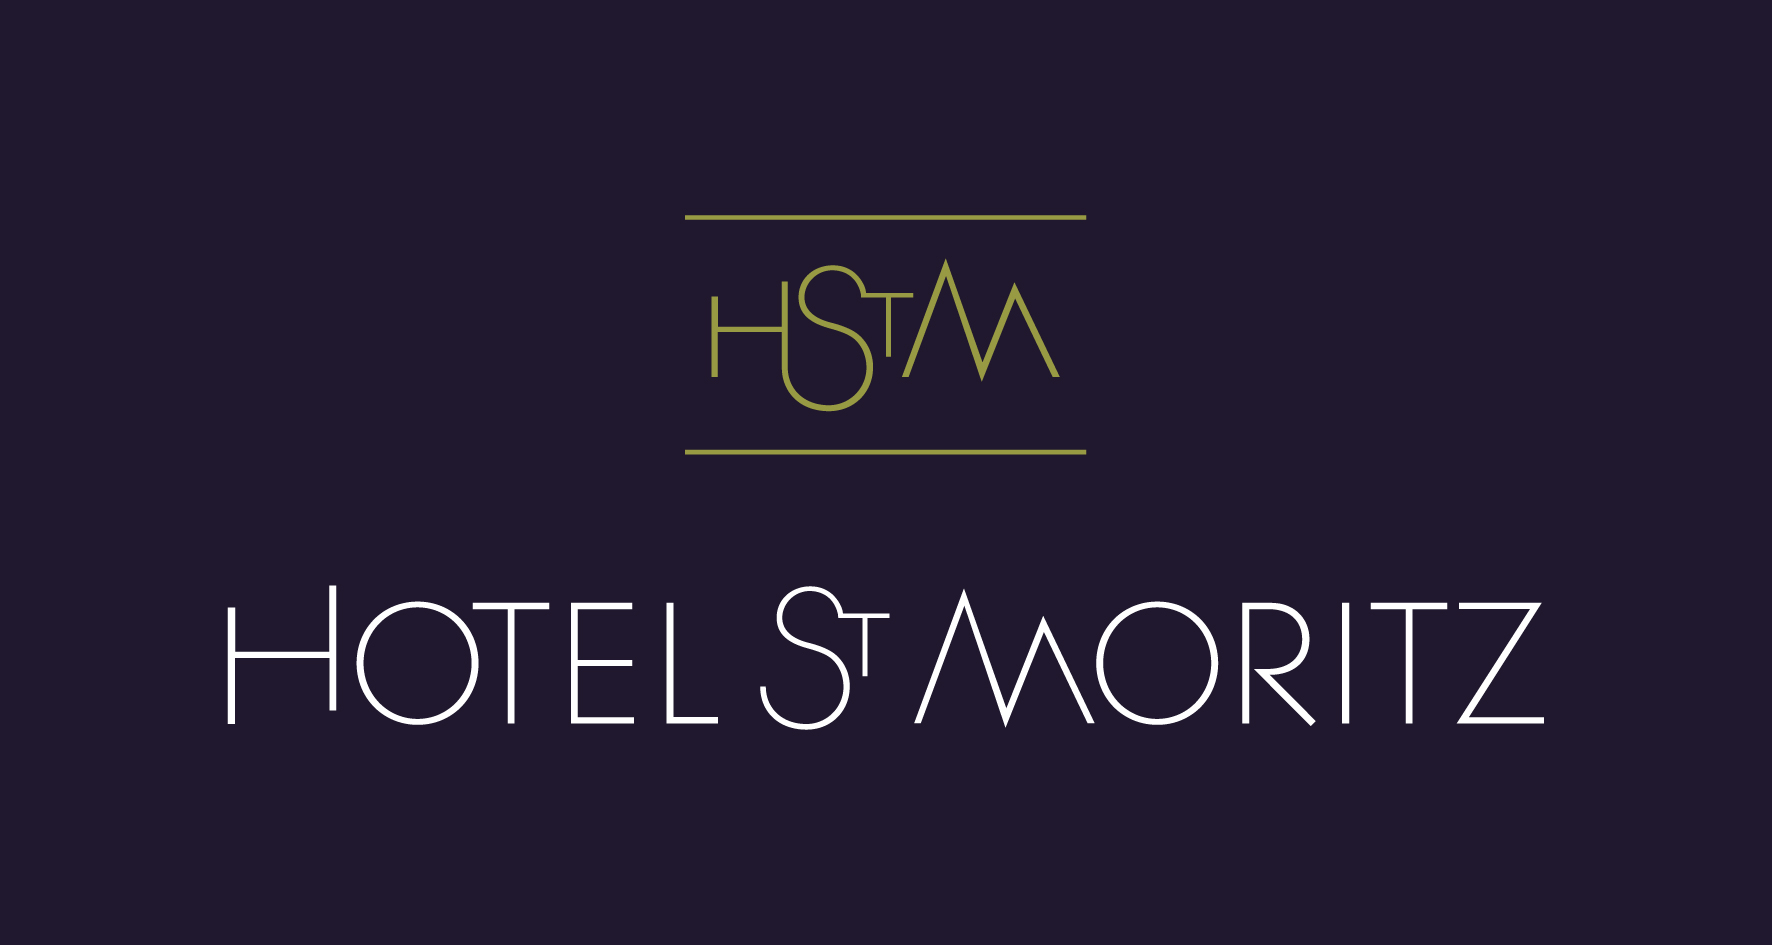 
Hotel St Moritz